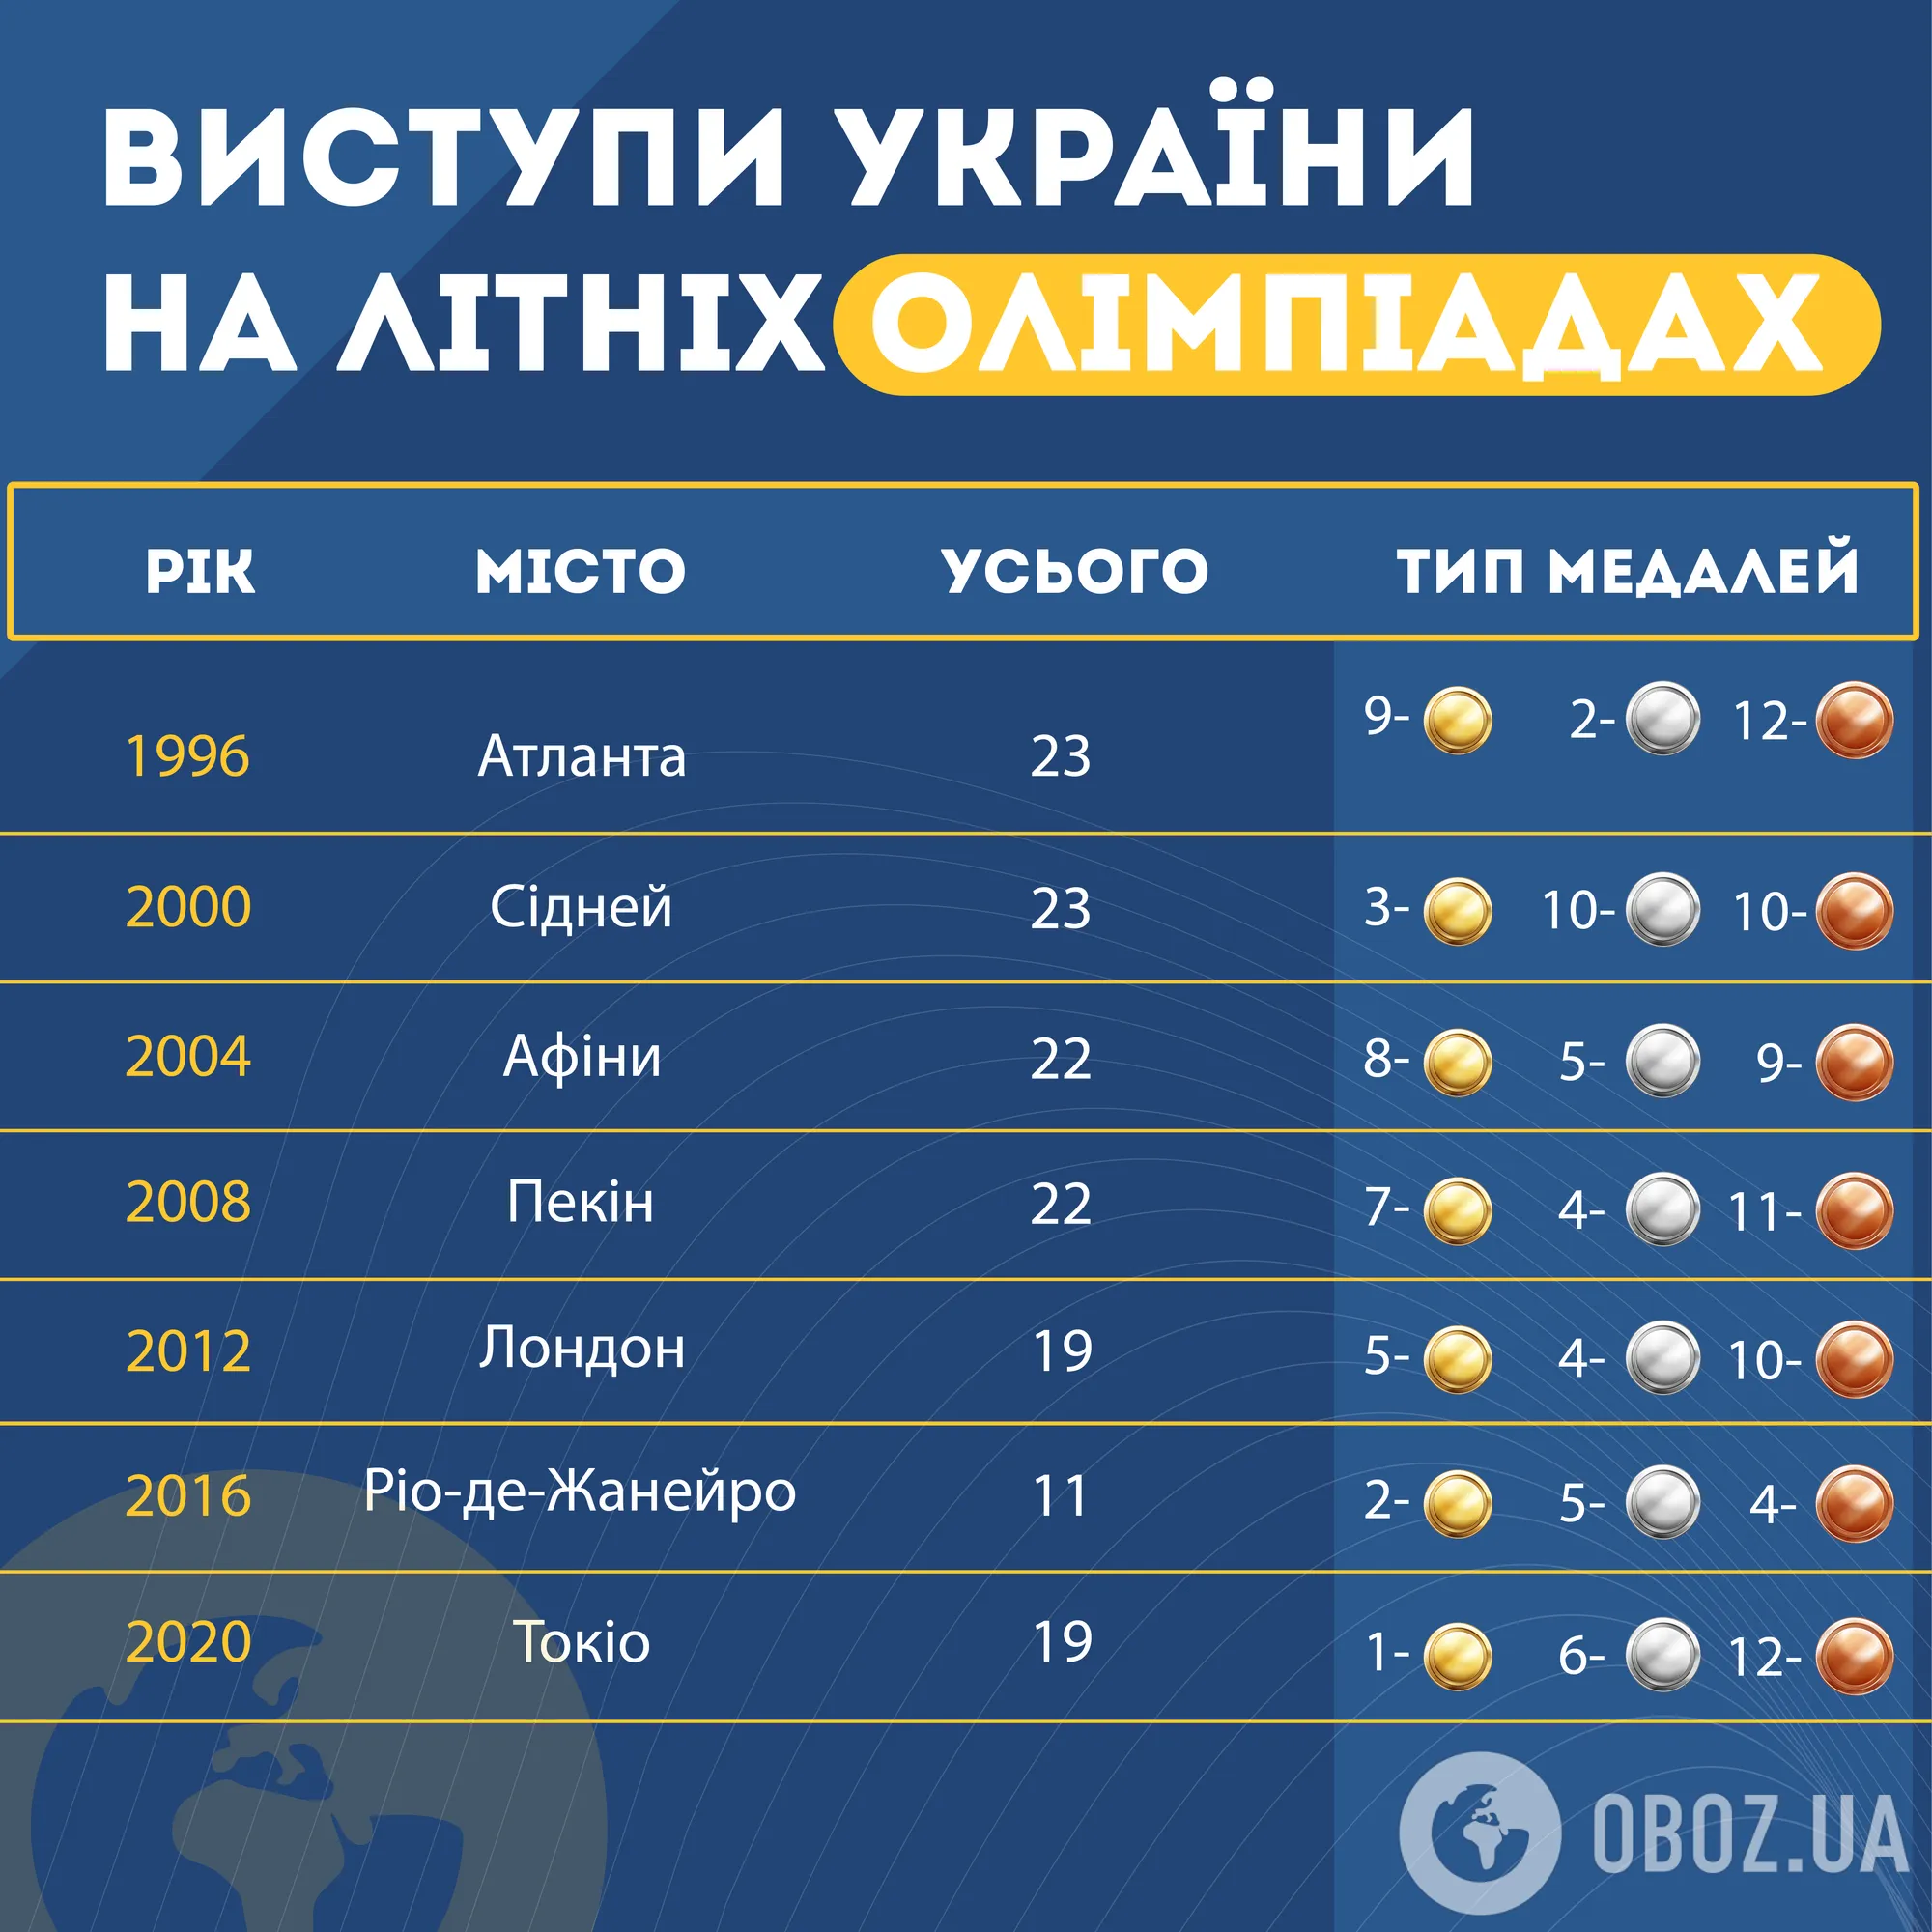 Брейк-данс, футбол и более 20 видов спорта. Как Олимпиада-2024 может стать самой результативной для Украины